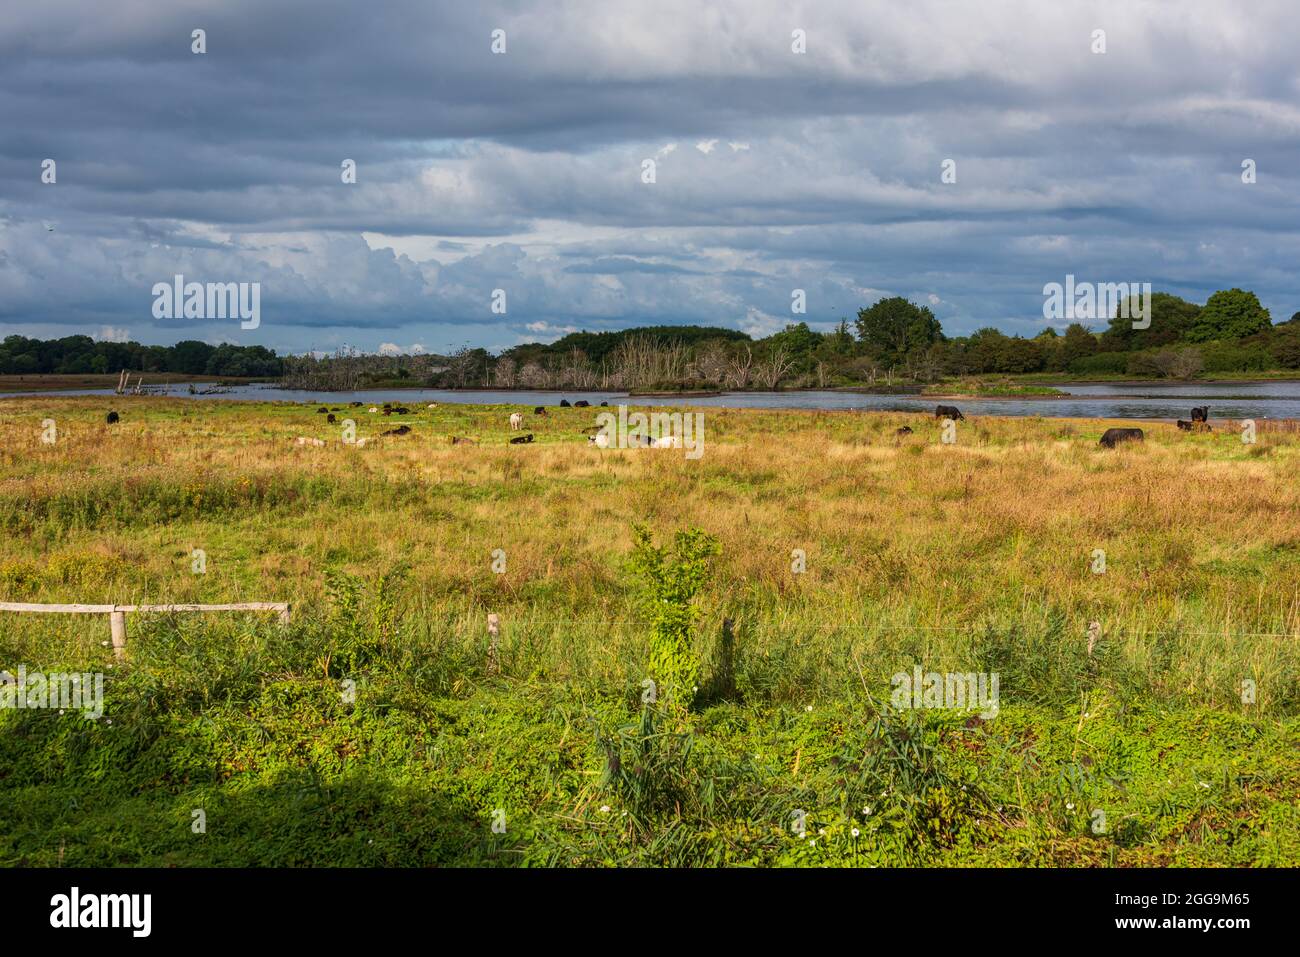 Die renaturierte Geltinger Birk an der Ostsee in Schleswig-Holstein mit ganzjährig hier lebenden Rindern an einem Sommerabend Foto Stock